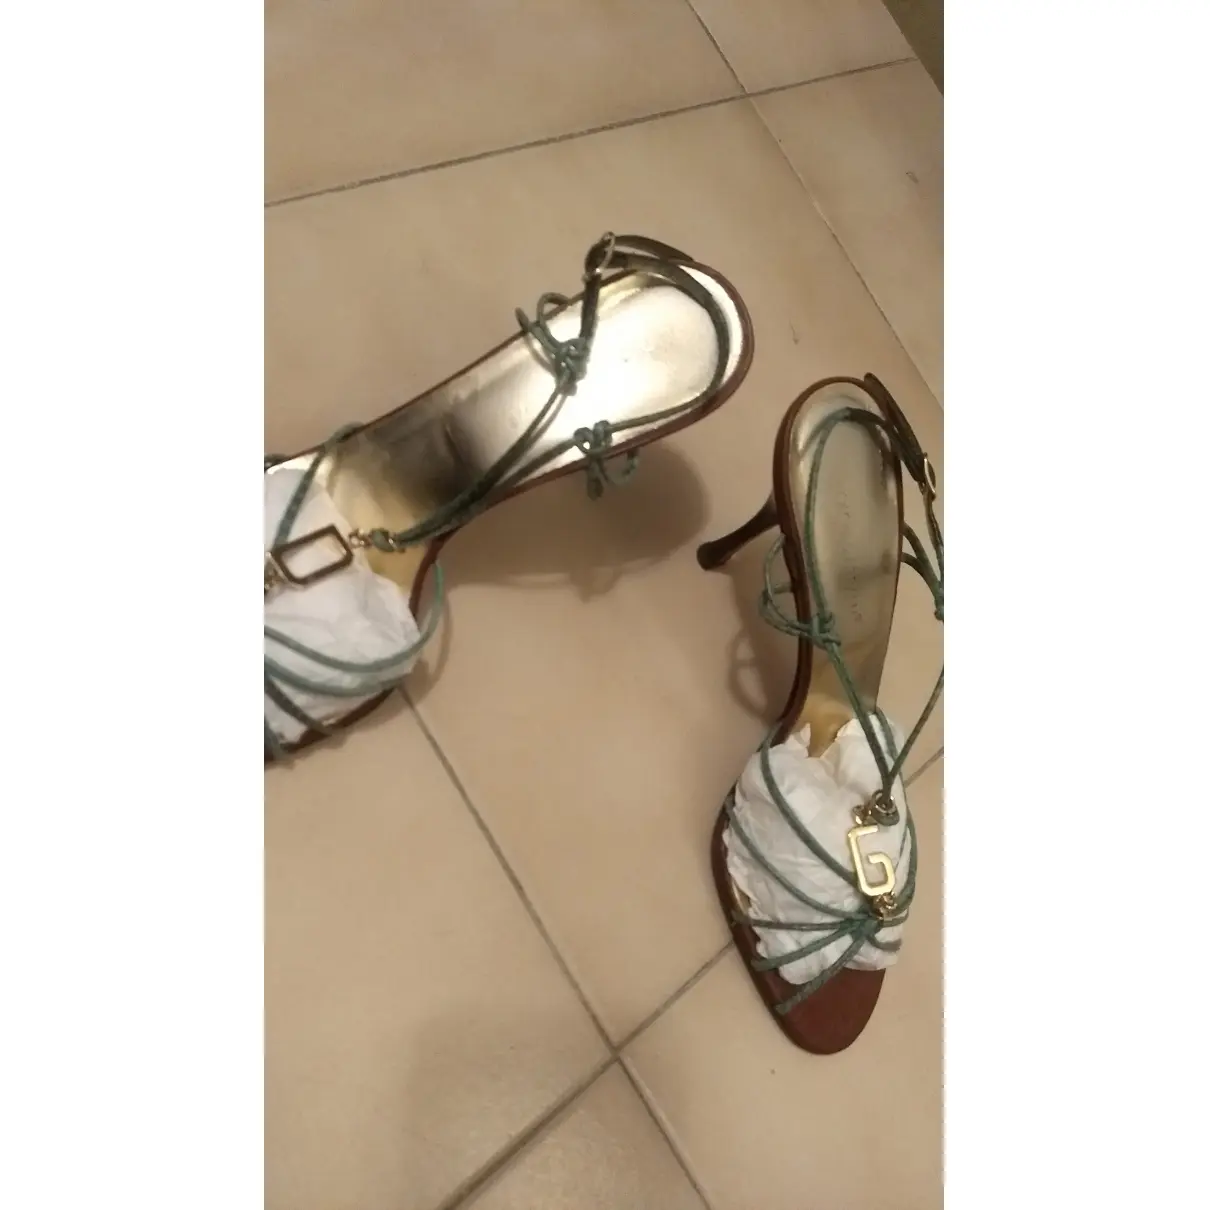 Buy Dolce & Gabbana Sandals online